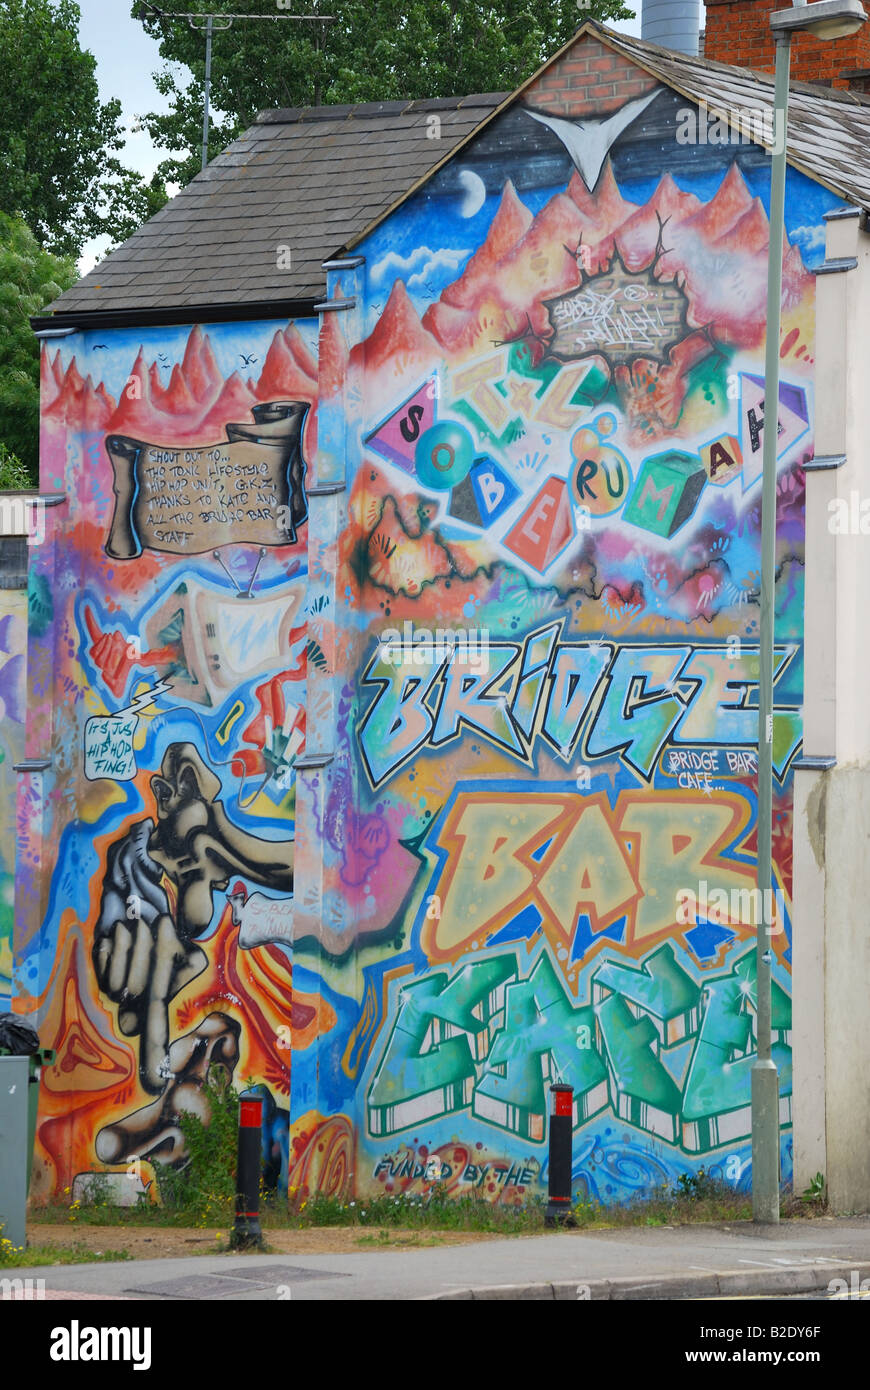 Graffiti sur le côté du bâtiment, Banbury, Oxfordshire, Angleterre, Royaume-Uni Banque D'Images